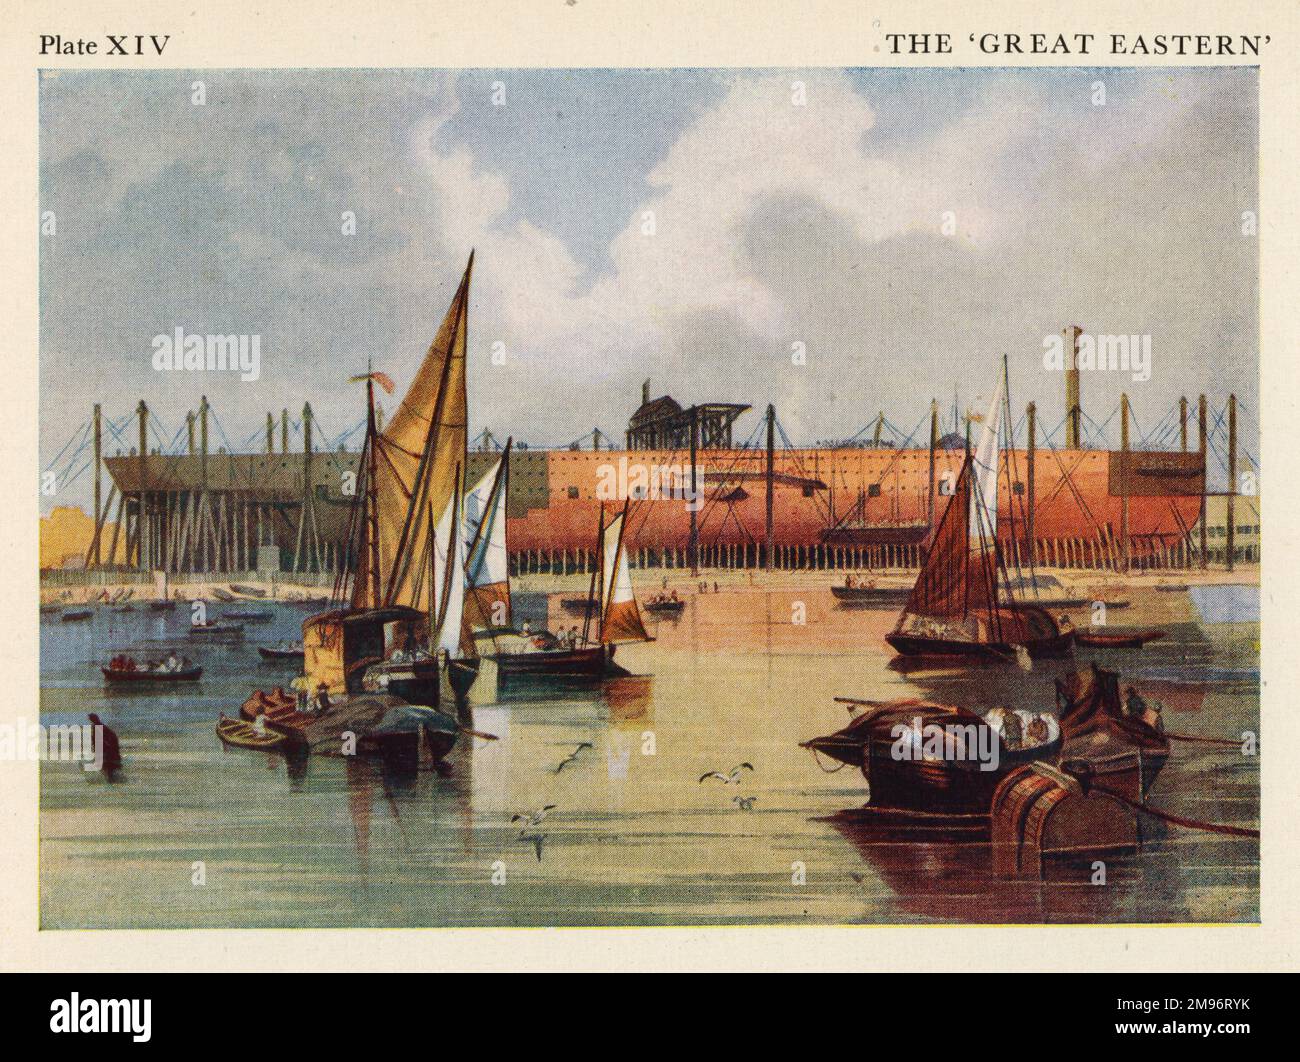 Great Eastern auf den Aktien von John Scott Russells Werft in Millwall. Lithographie von John Wilson Carmichael. Stockfoto